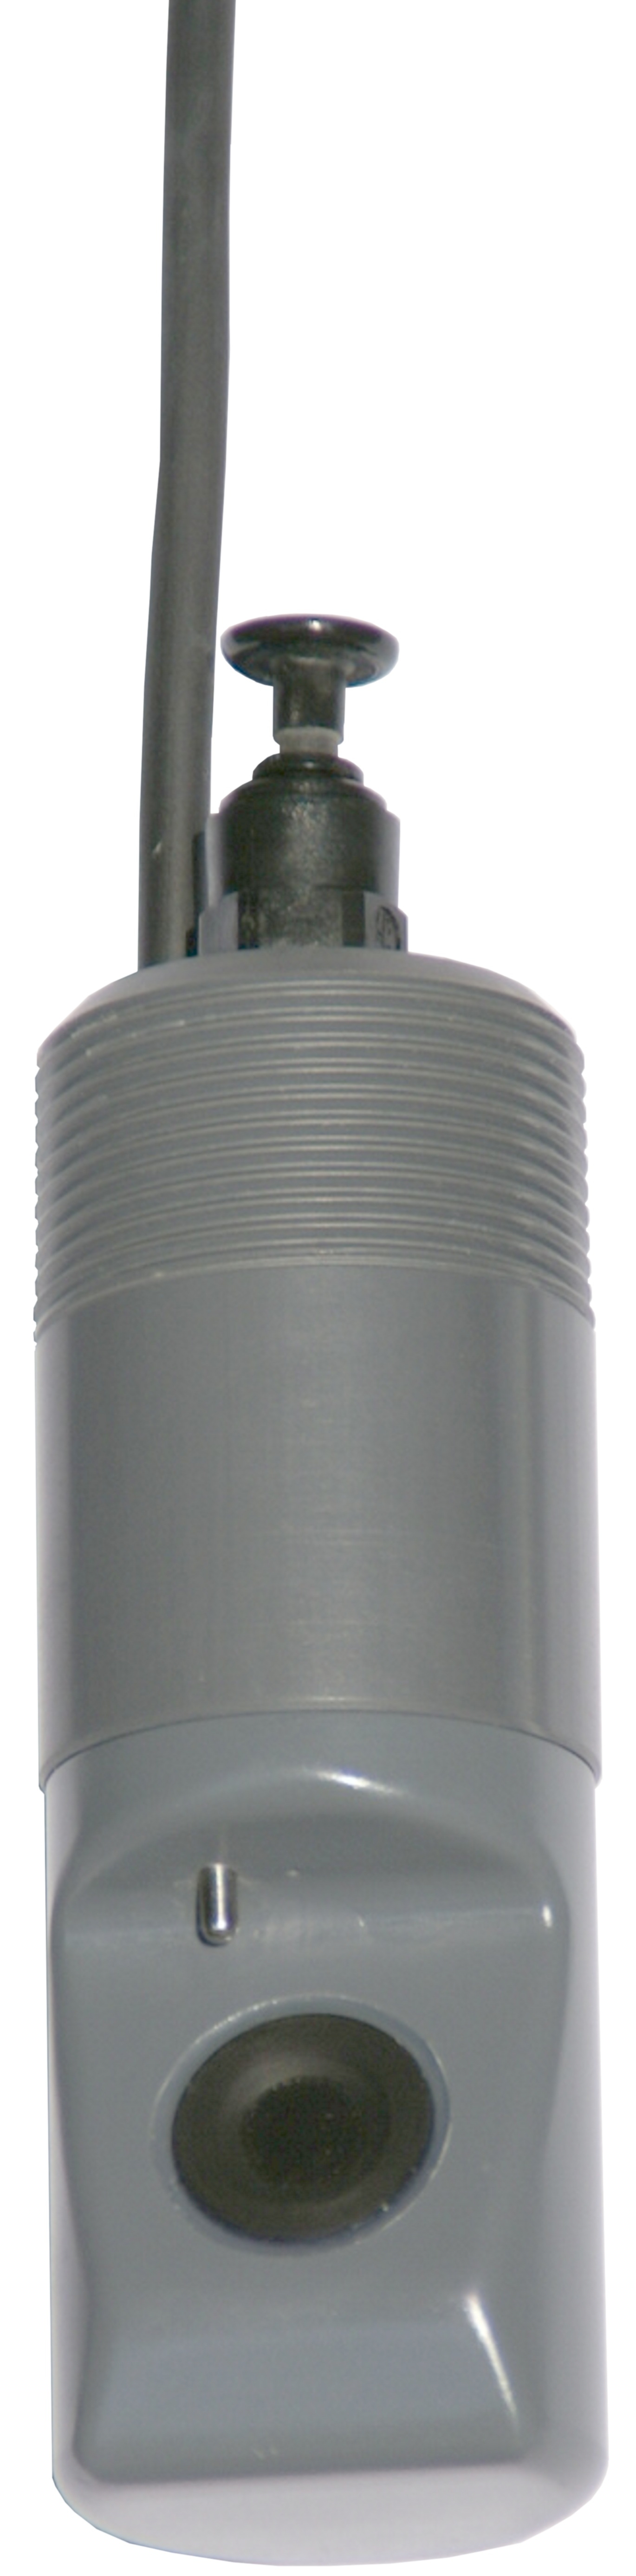 UniFluOx optyczny miernik tlenu rozpuszczonego w wodzie 02.2008.5 3.2 Kod zamówienia Przetwornik pomiarowy USM-01 Nr zam: ANN0 USM1 0000 000 Czujnik tlenu typ IS10 z kablem 10 m.